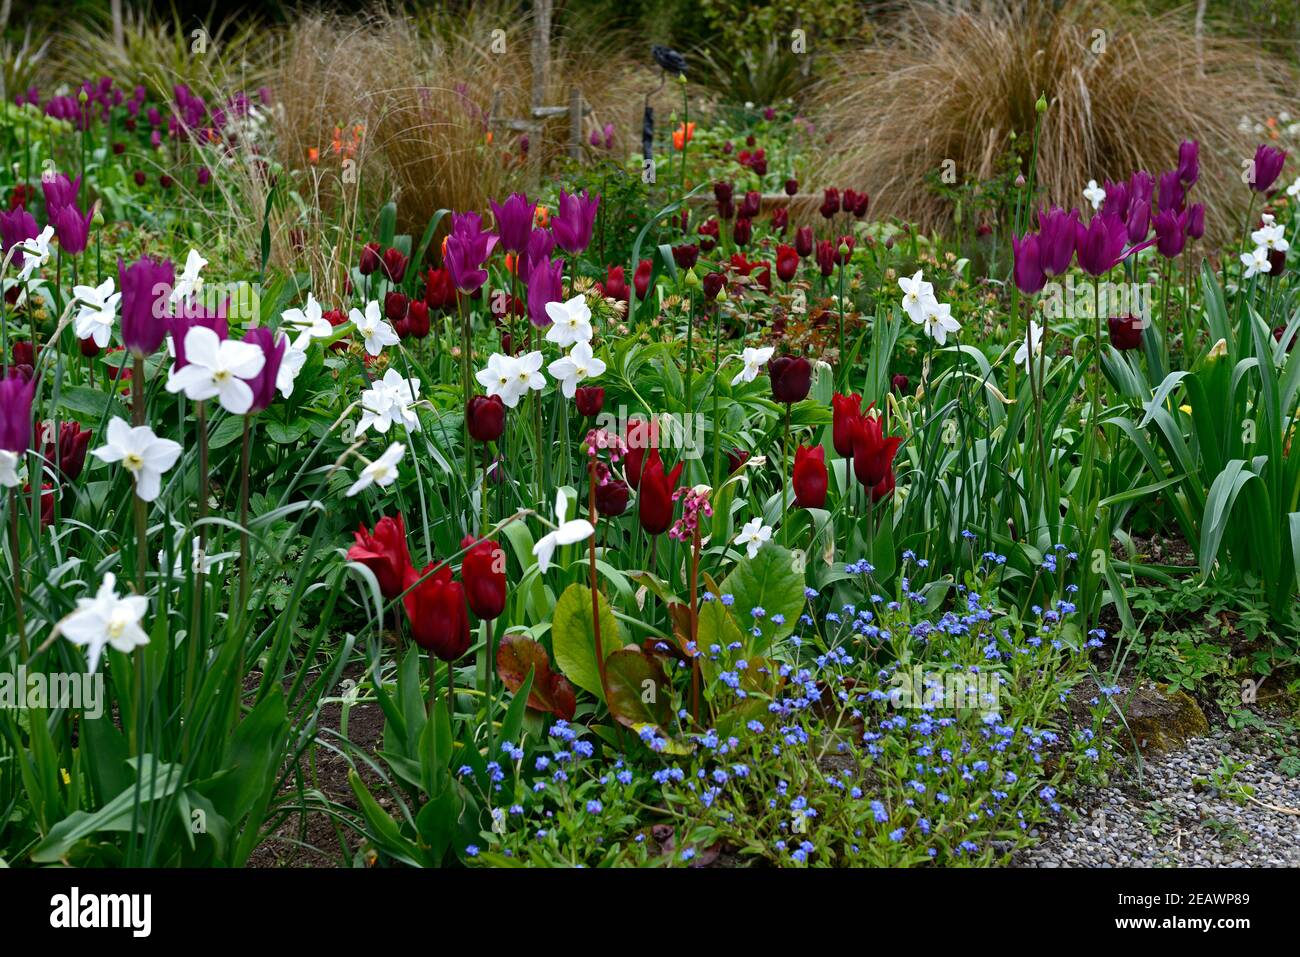 narcissus polar ice,narcissus silver chimes,tulipa purple dream,tulipa recreado,tulipa lasting love,tulipa orange ballerina,allium,alliums,tulip,tulip Stock Photo